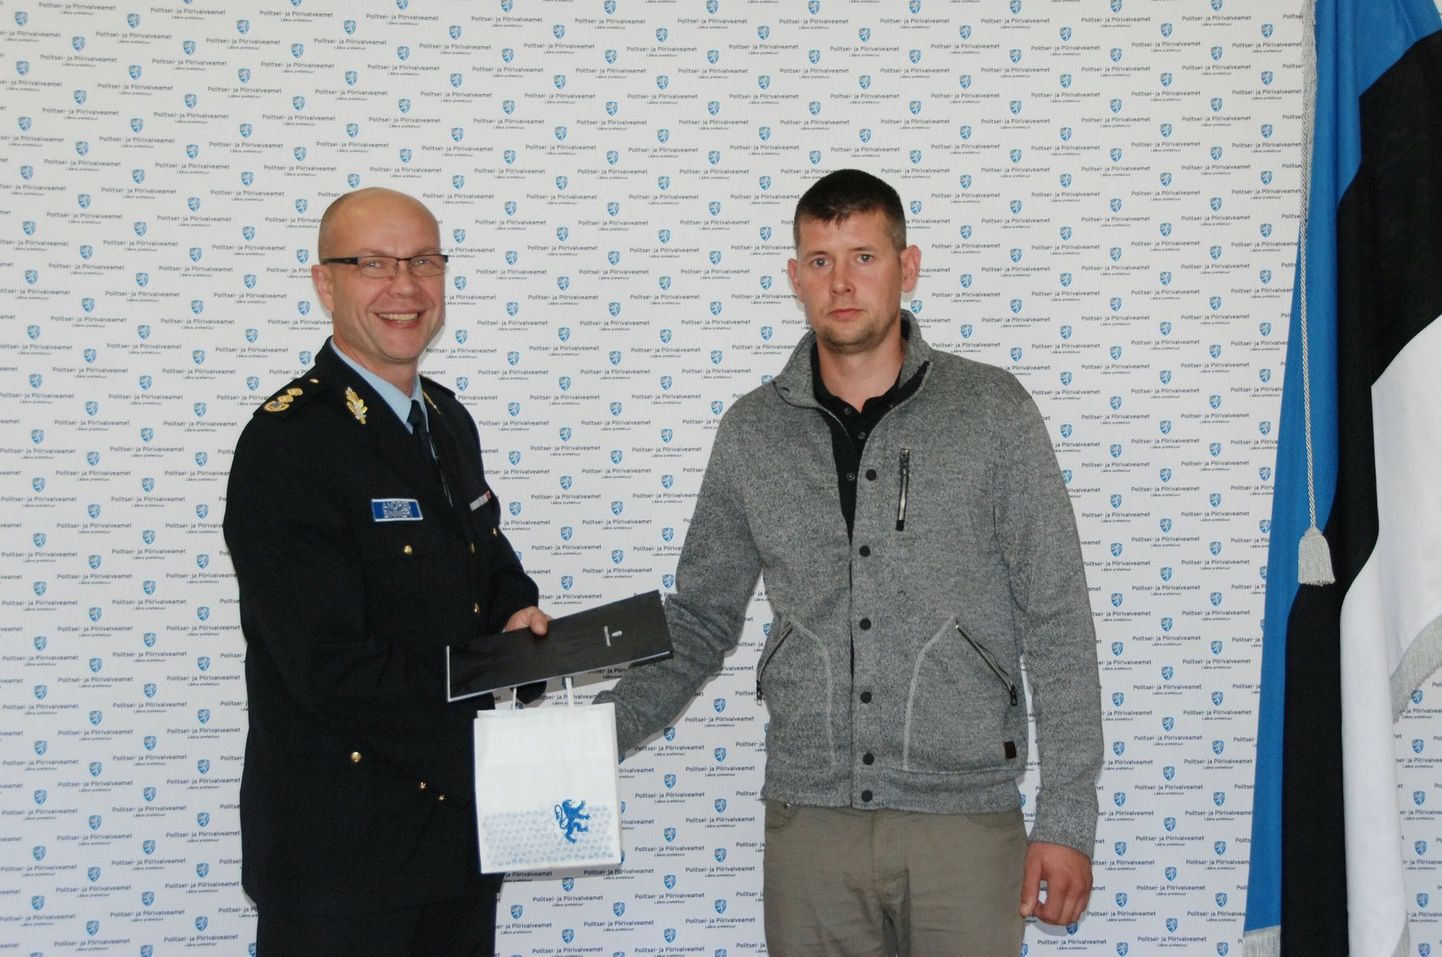 Pärnu politseijaoskonna juht Andres Sinimeri tänas Erkot, kes oli 11aastase poisi ründaja kinnipidamisel politseile suureks abiks.